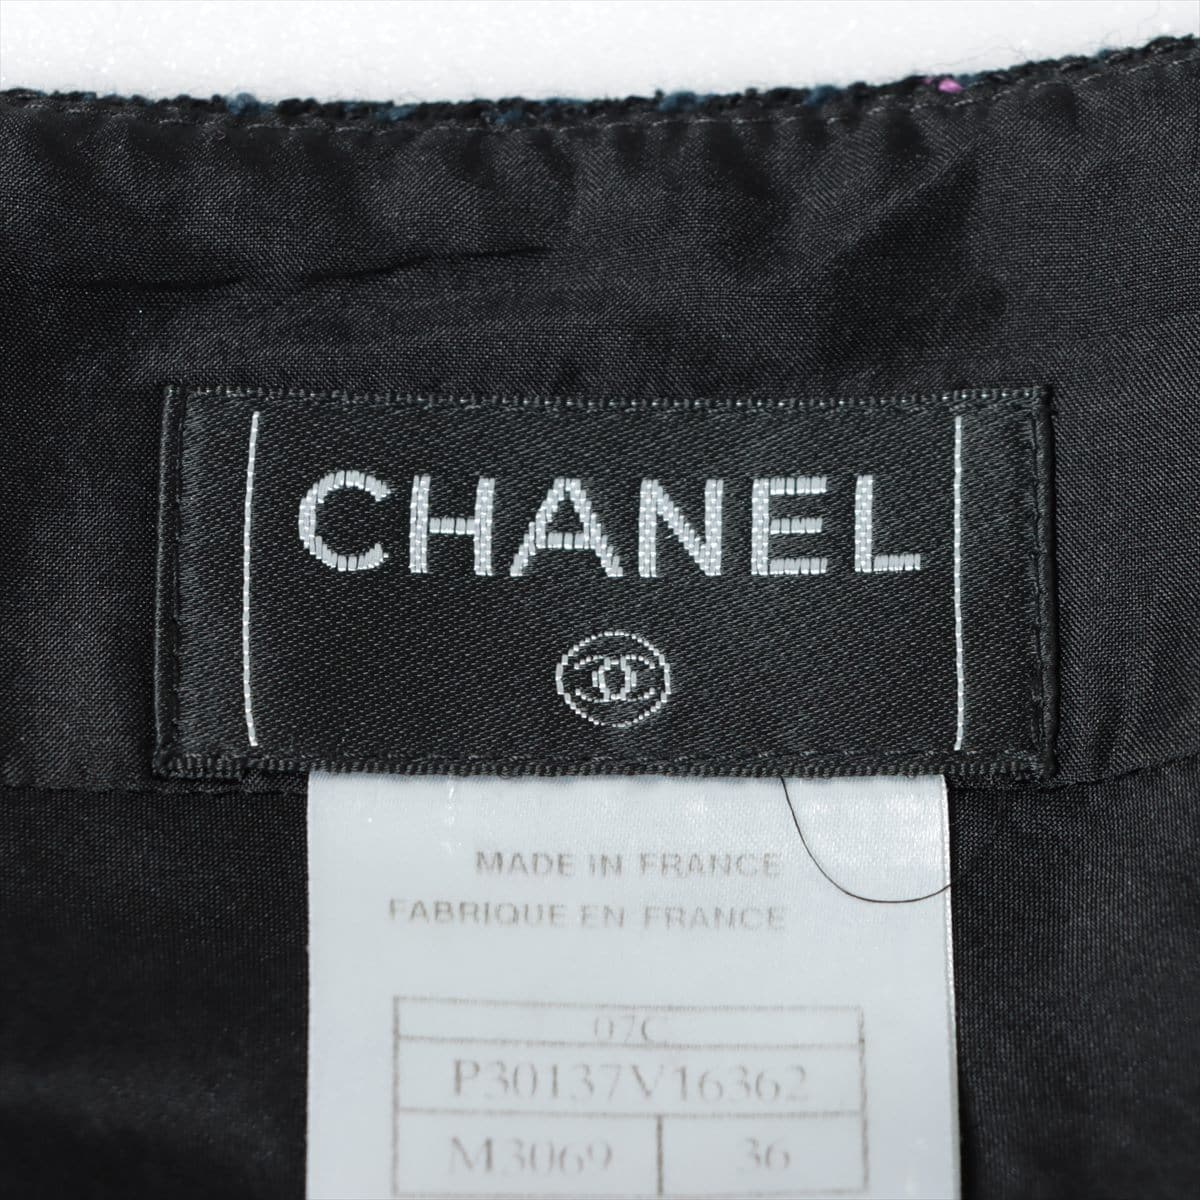 Chanel Tweed Skirt 36 Ladies' Black  07C